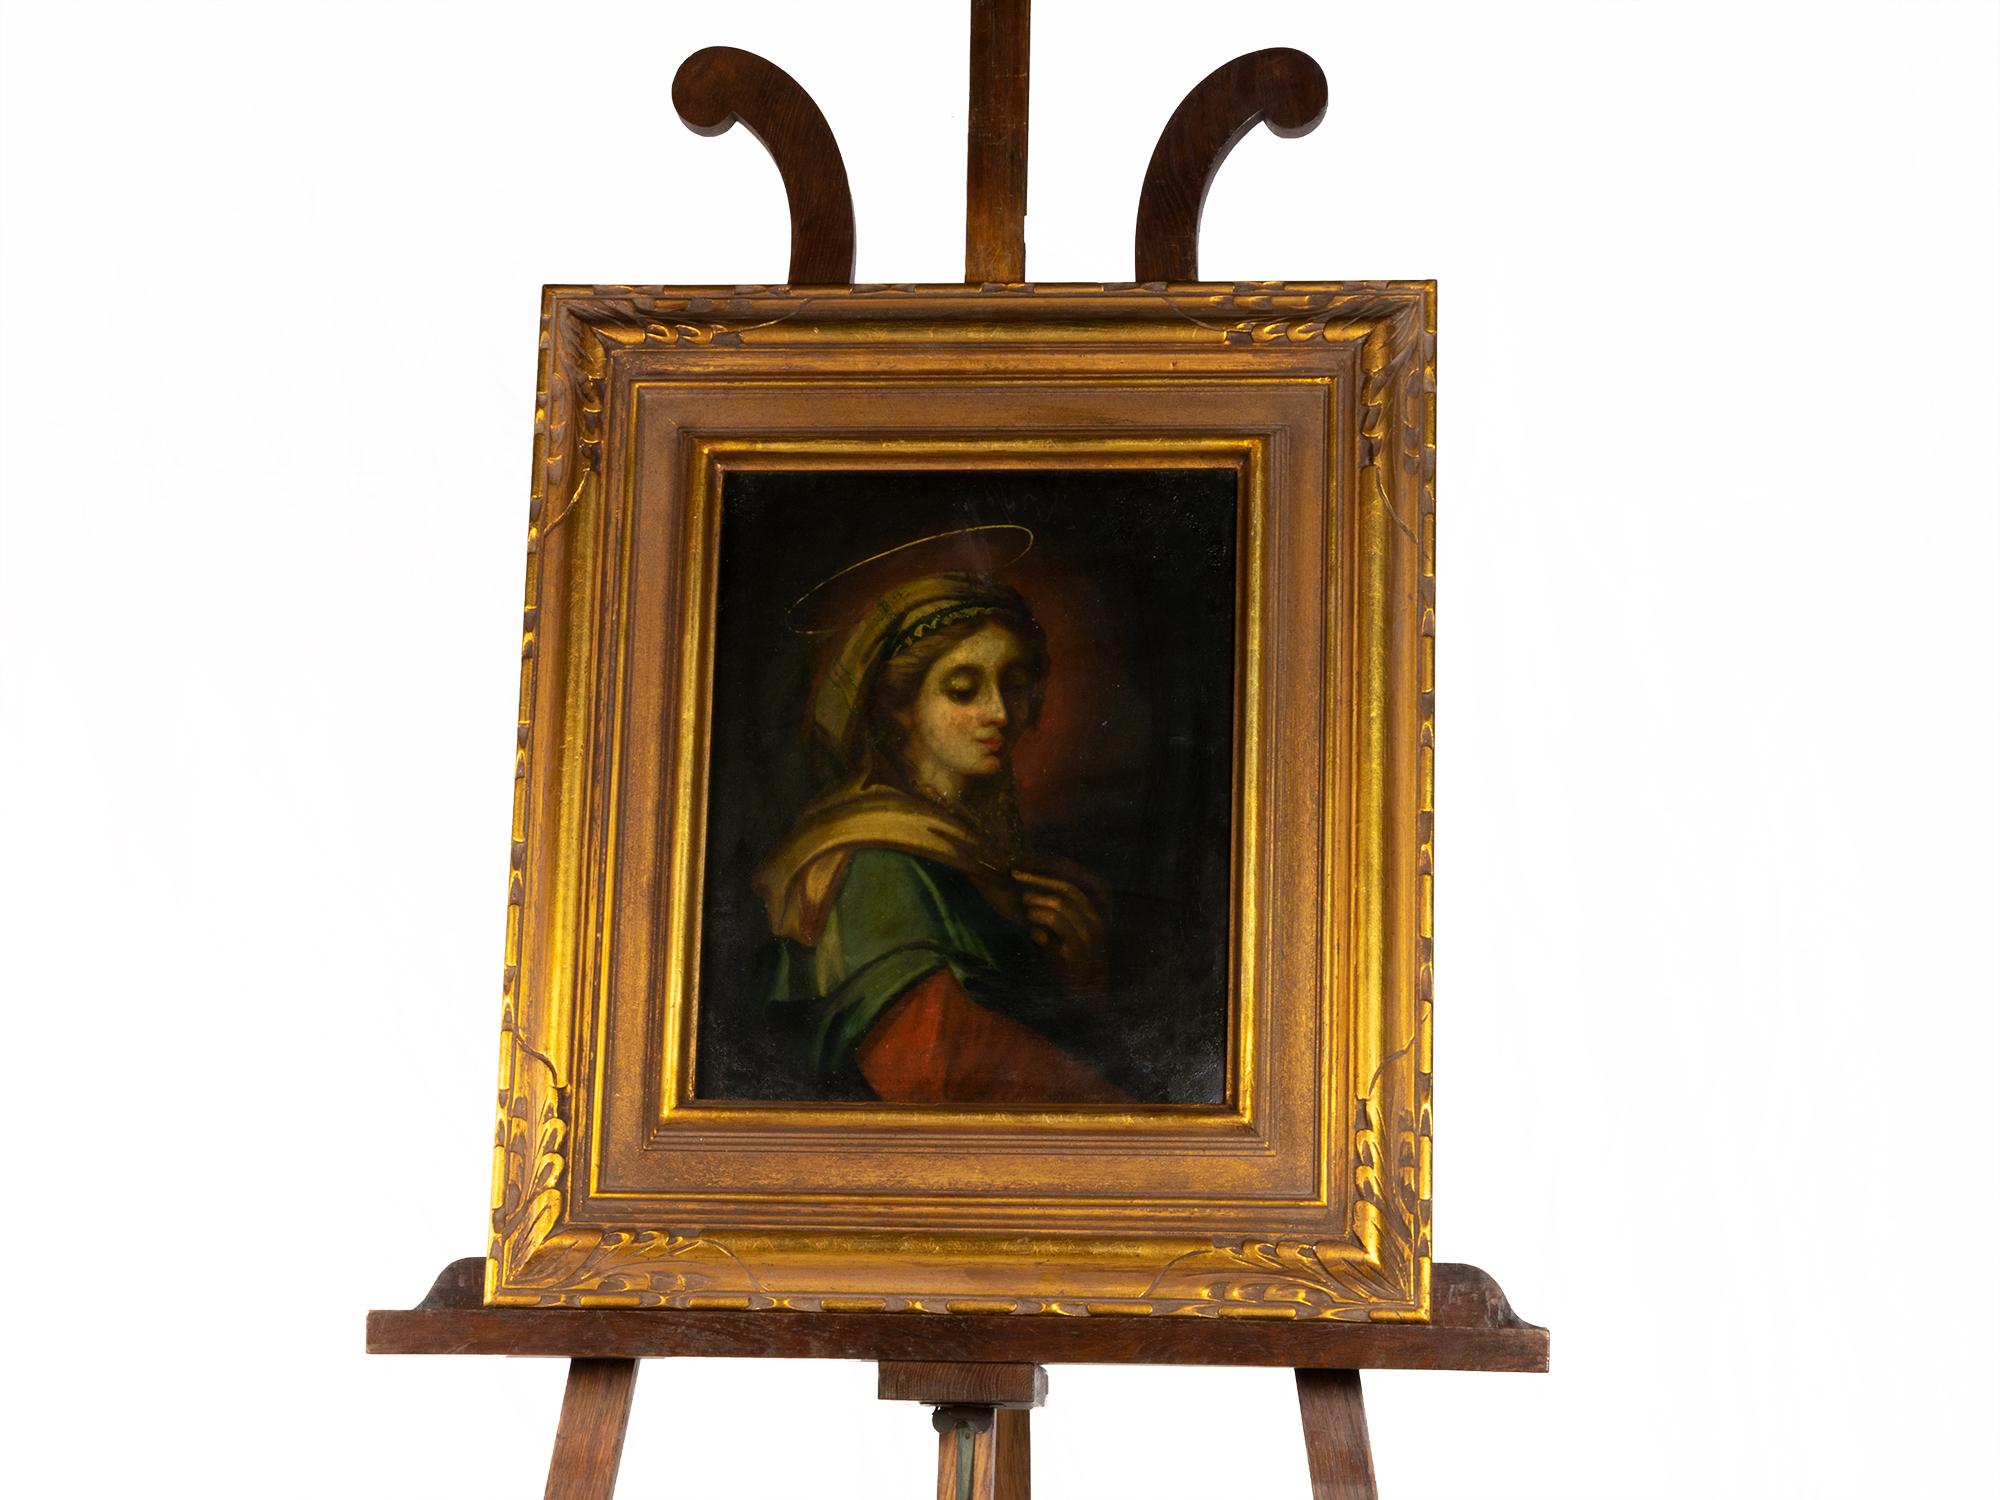 Ein barockes Gemälde aus dem 17. Jahrhundert, das die Muttergottes der Unbefleckten Empfängnis in gelber, grüner und roter Seide darstellt.
Die Hand auf der Brust, die Hand Gottes und der Heiligenschein stehen für die Empfängnis der Jungfrau Maria